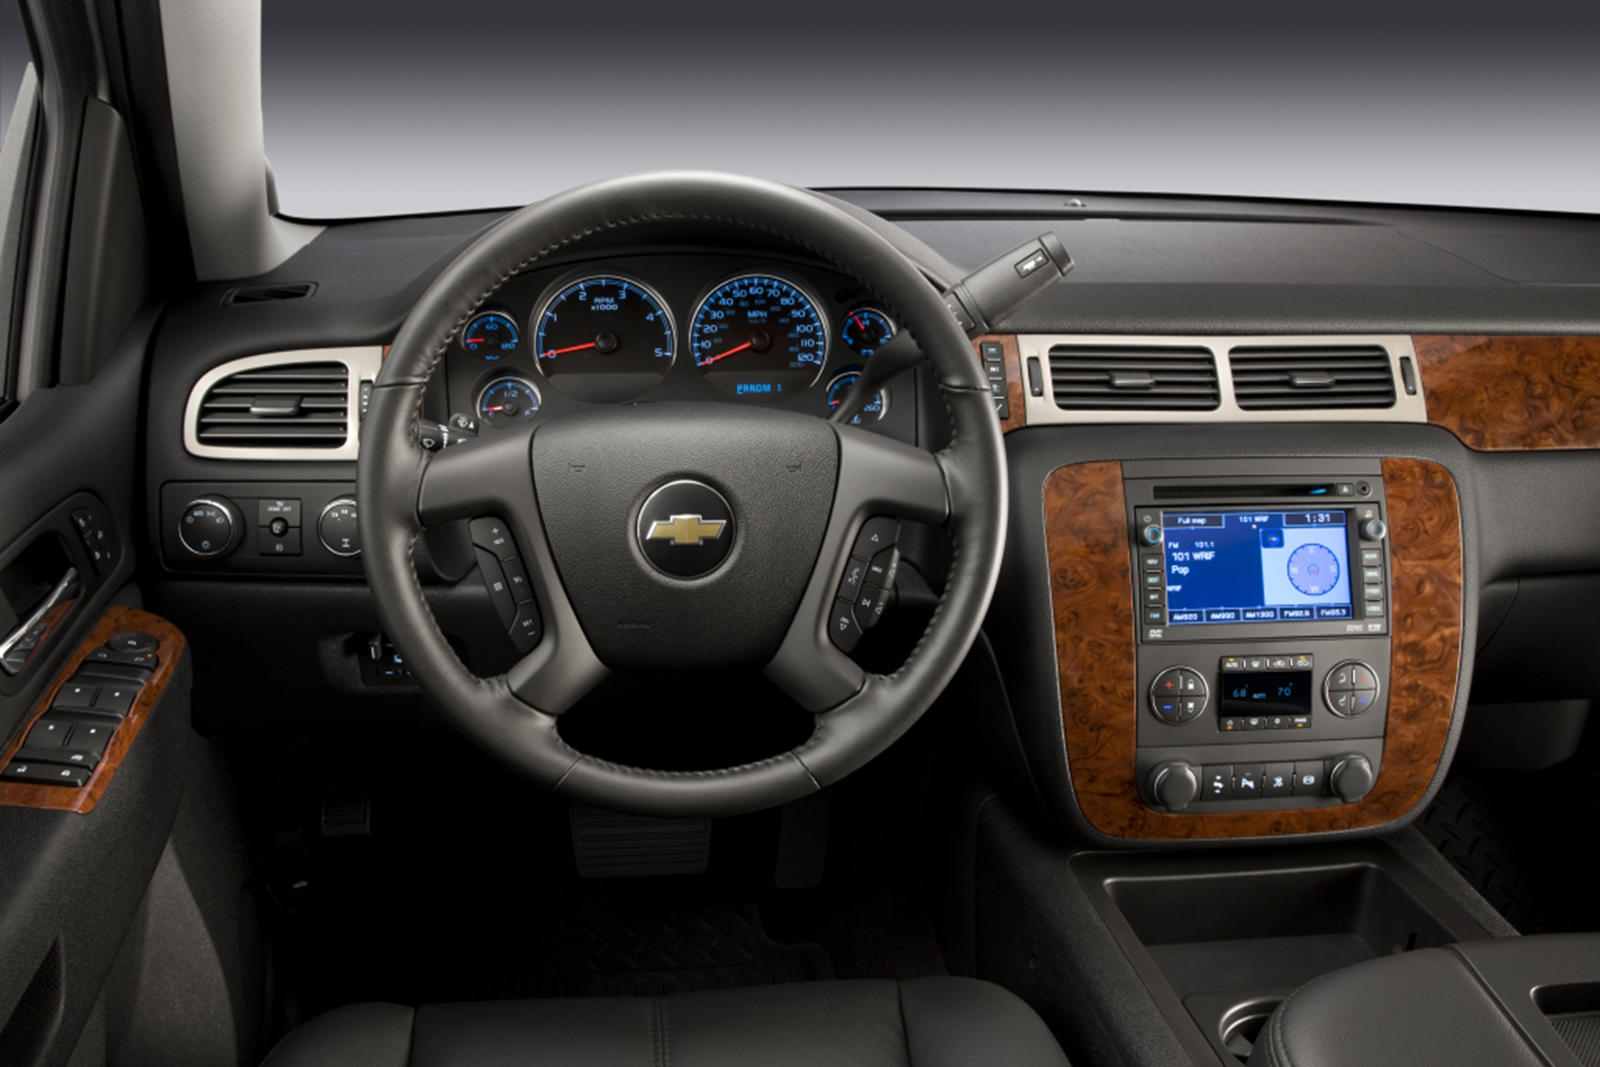 2009 Chevrolet Silverado 1500 Hybrid Interior Photos | CarBuzz